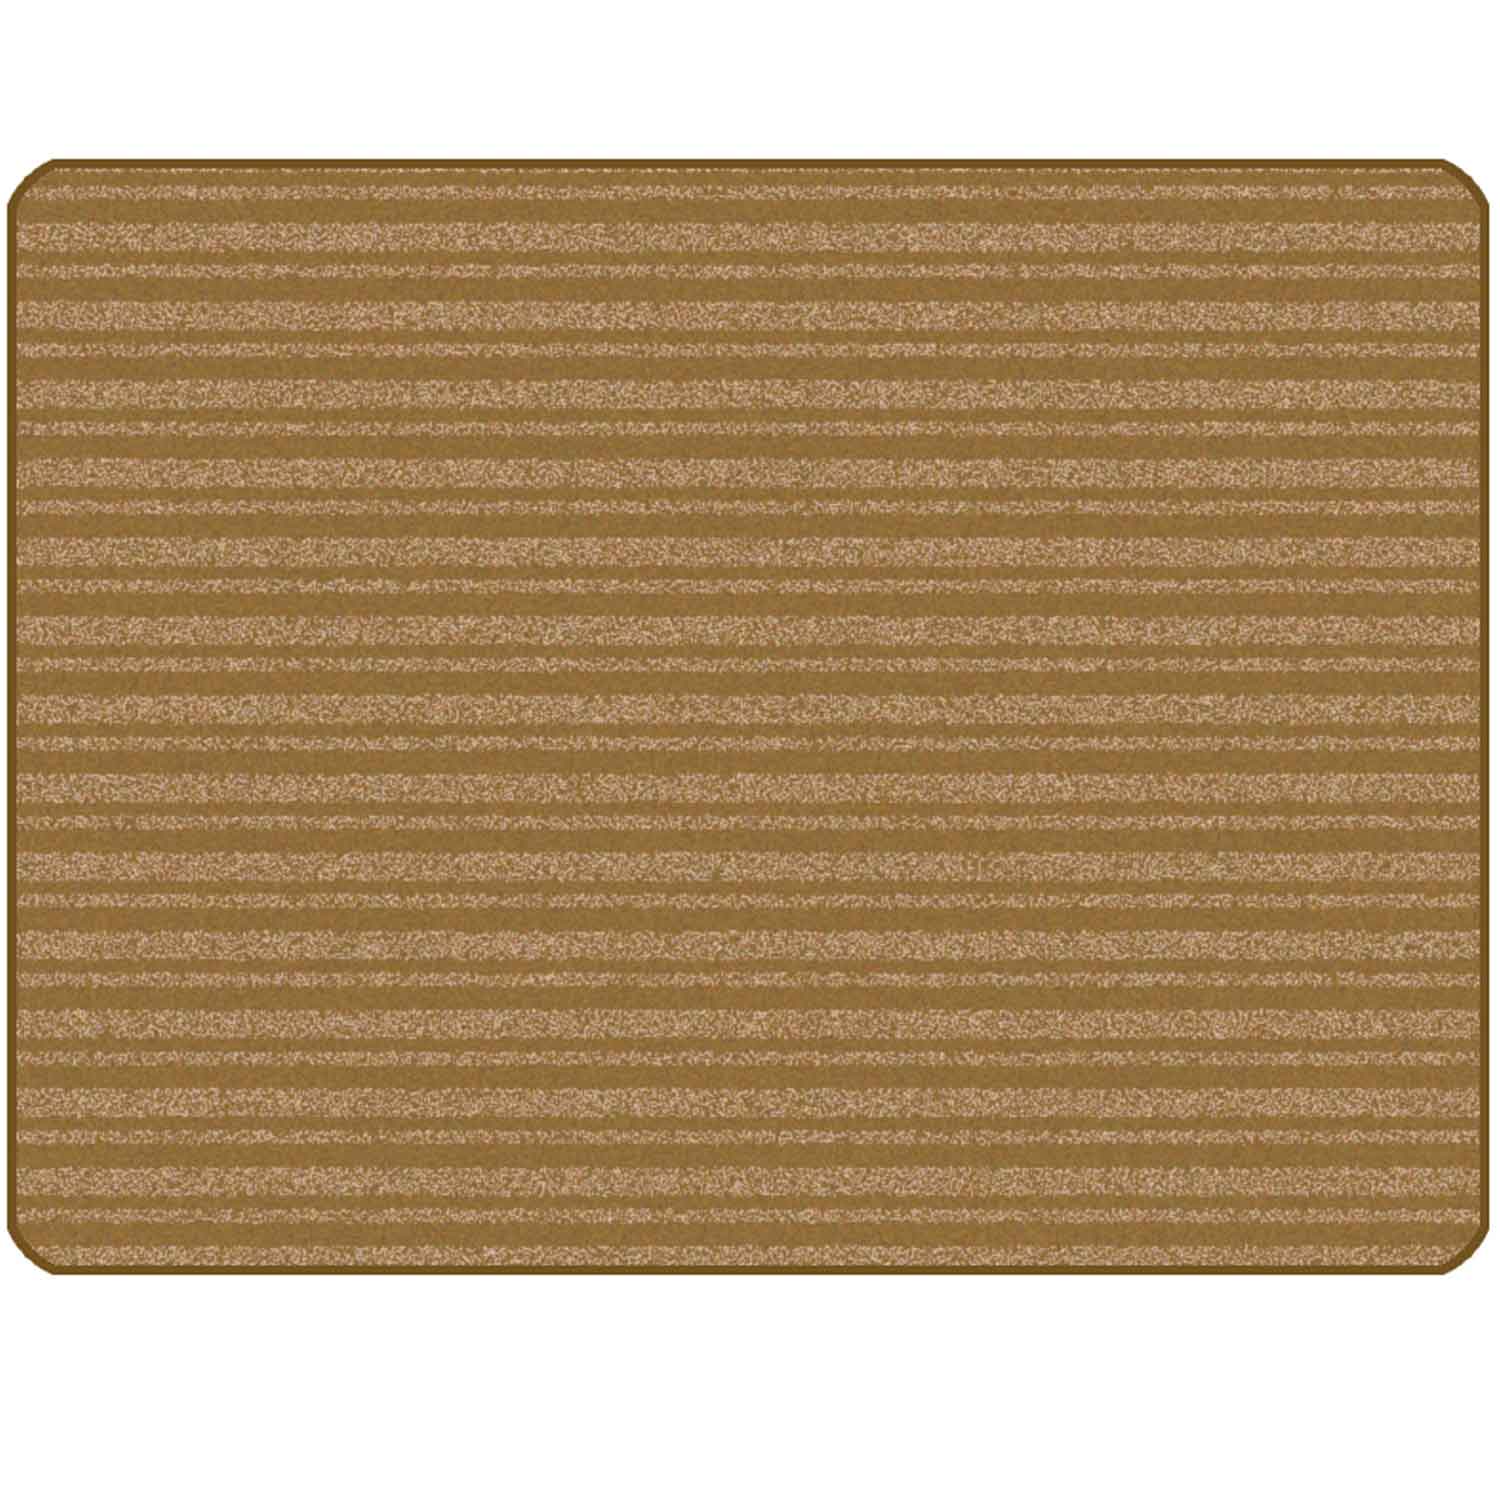 KIDSoft Subtle Stripes Rug Brown Tan 4' x 6'